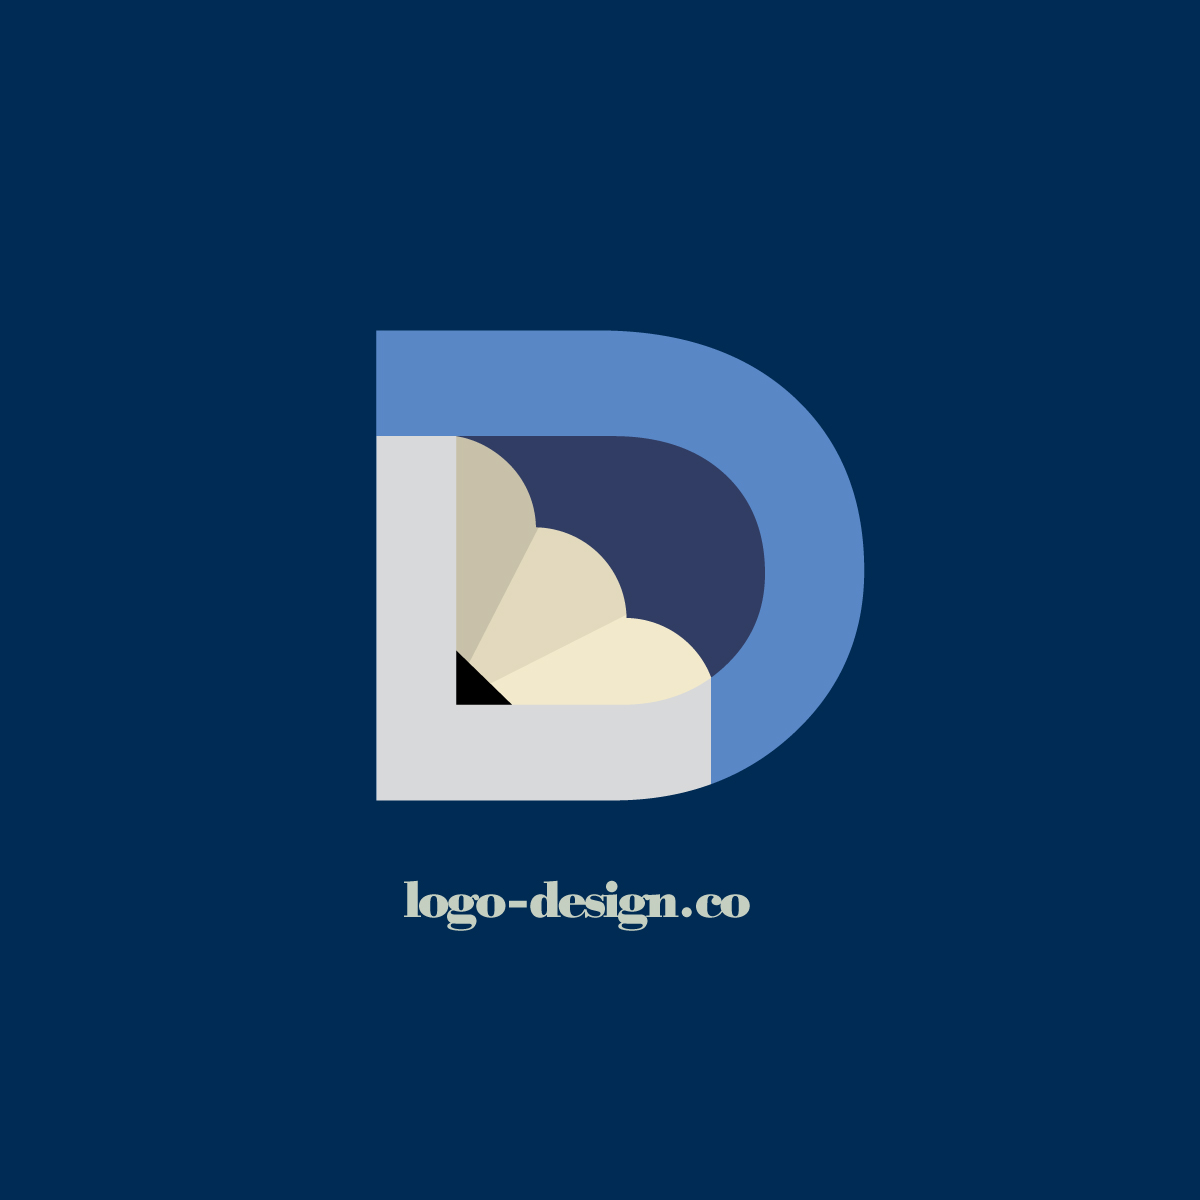 logo design co monogram typographic logo